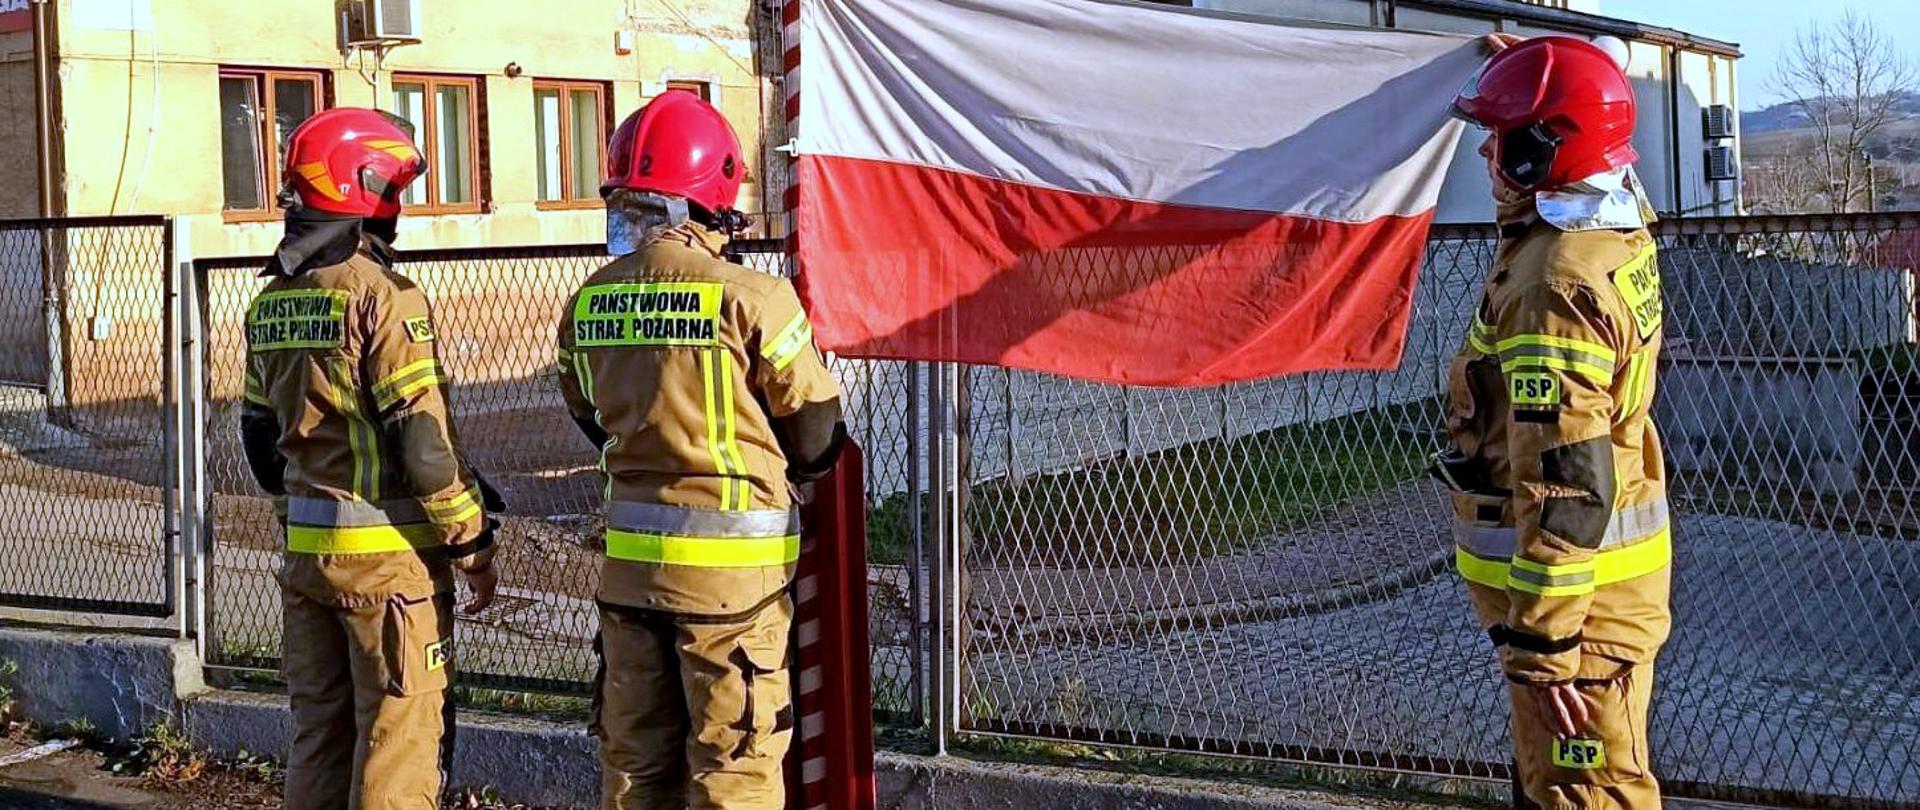 Na zdjęciu widać poczet flagowy wciągający flagę na maszt. Wszyscy strażacy ubrani są w umundurowanie specjalne, a na głowie mają hełmy.